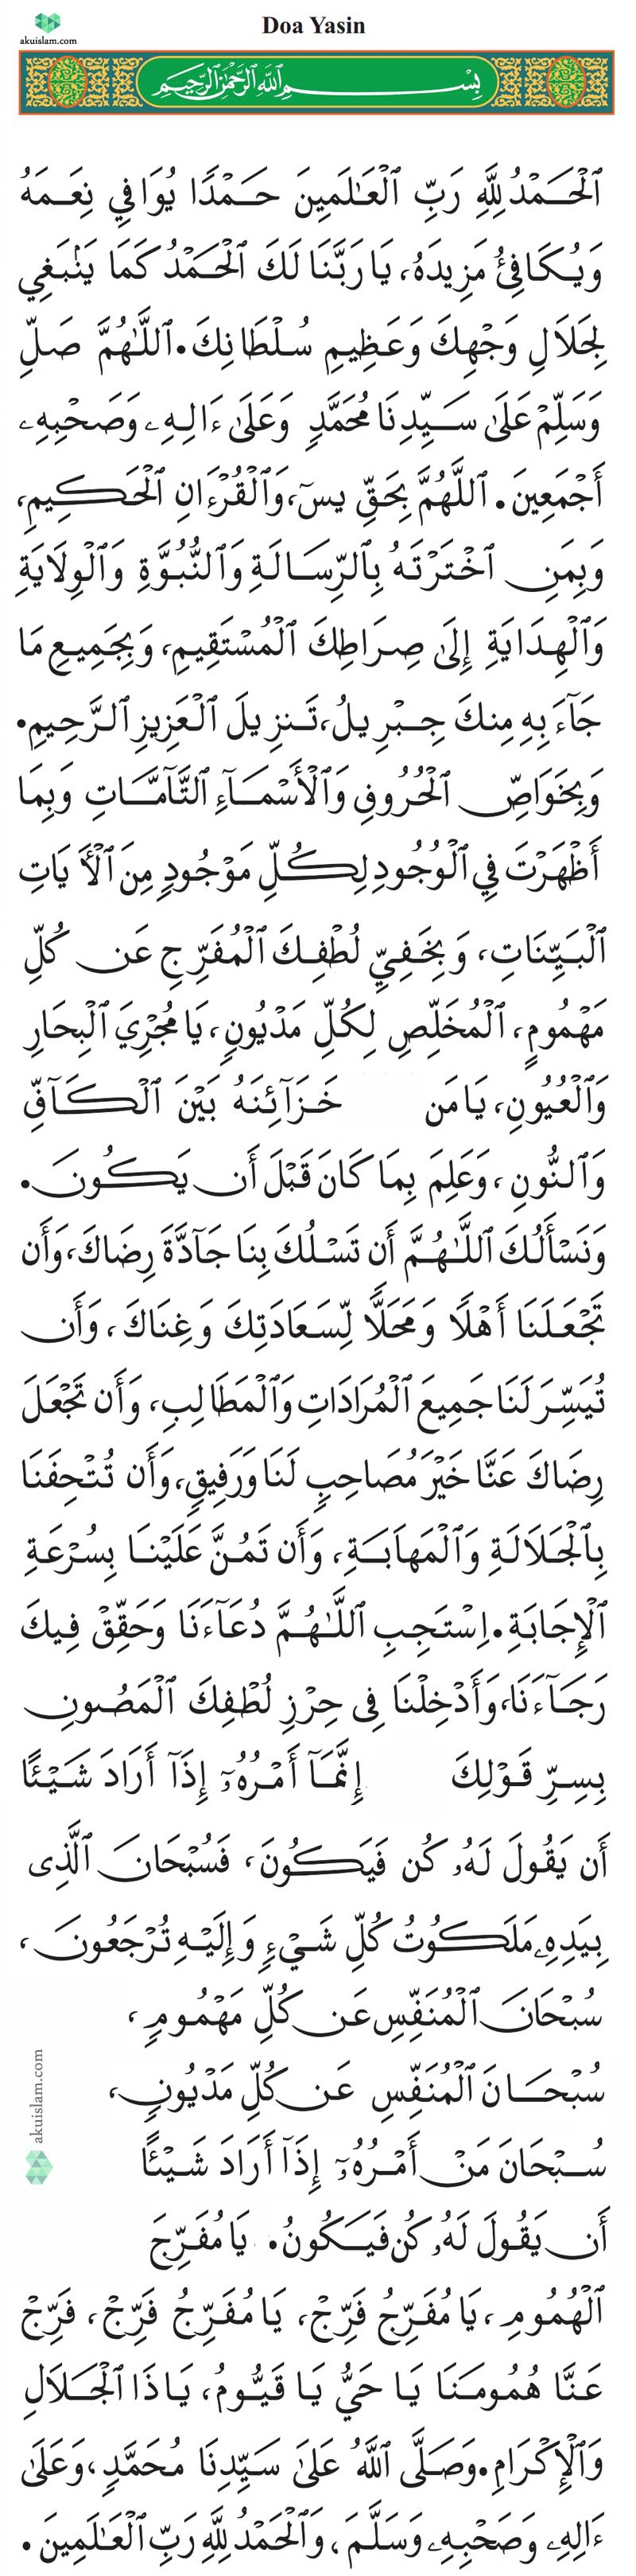 0 Result Images of Doa Sebelum Membaca Al Quran Rumi - PNG Image Collection